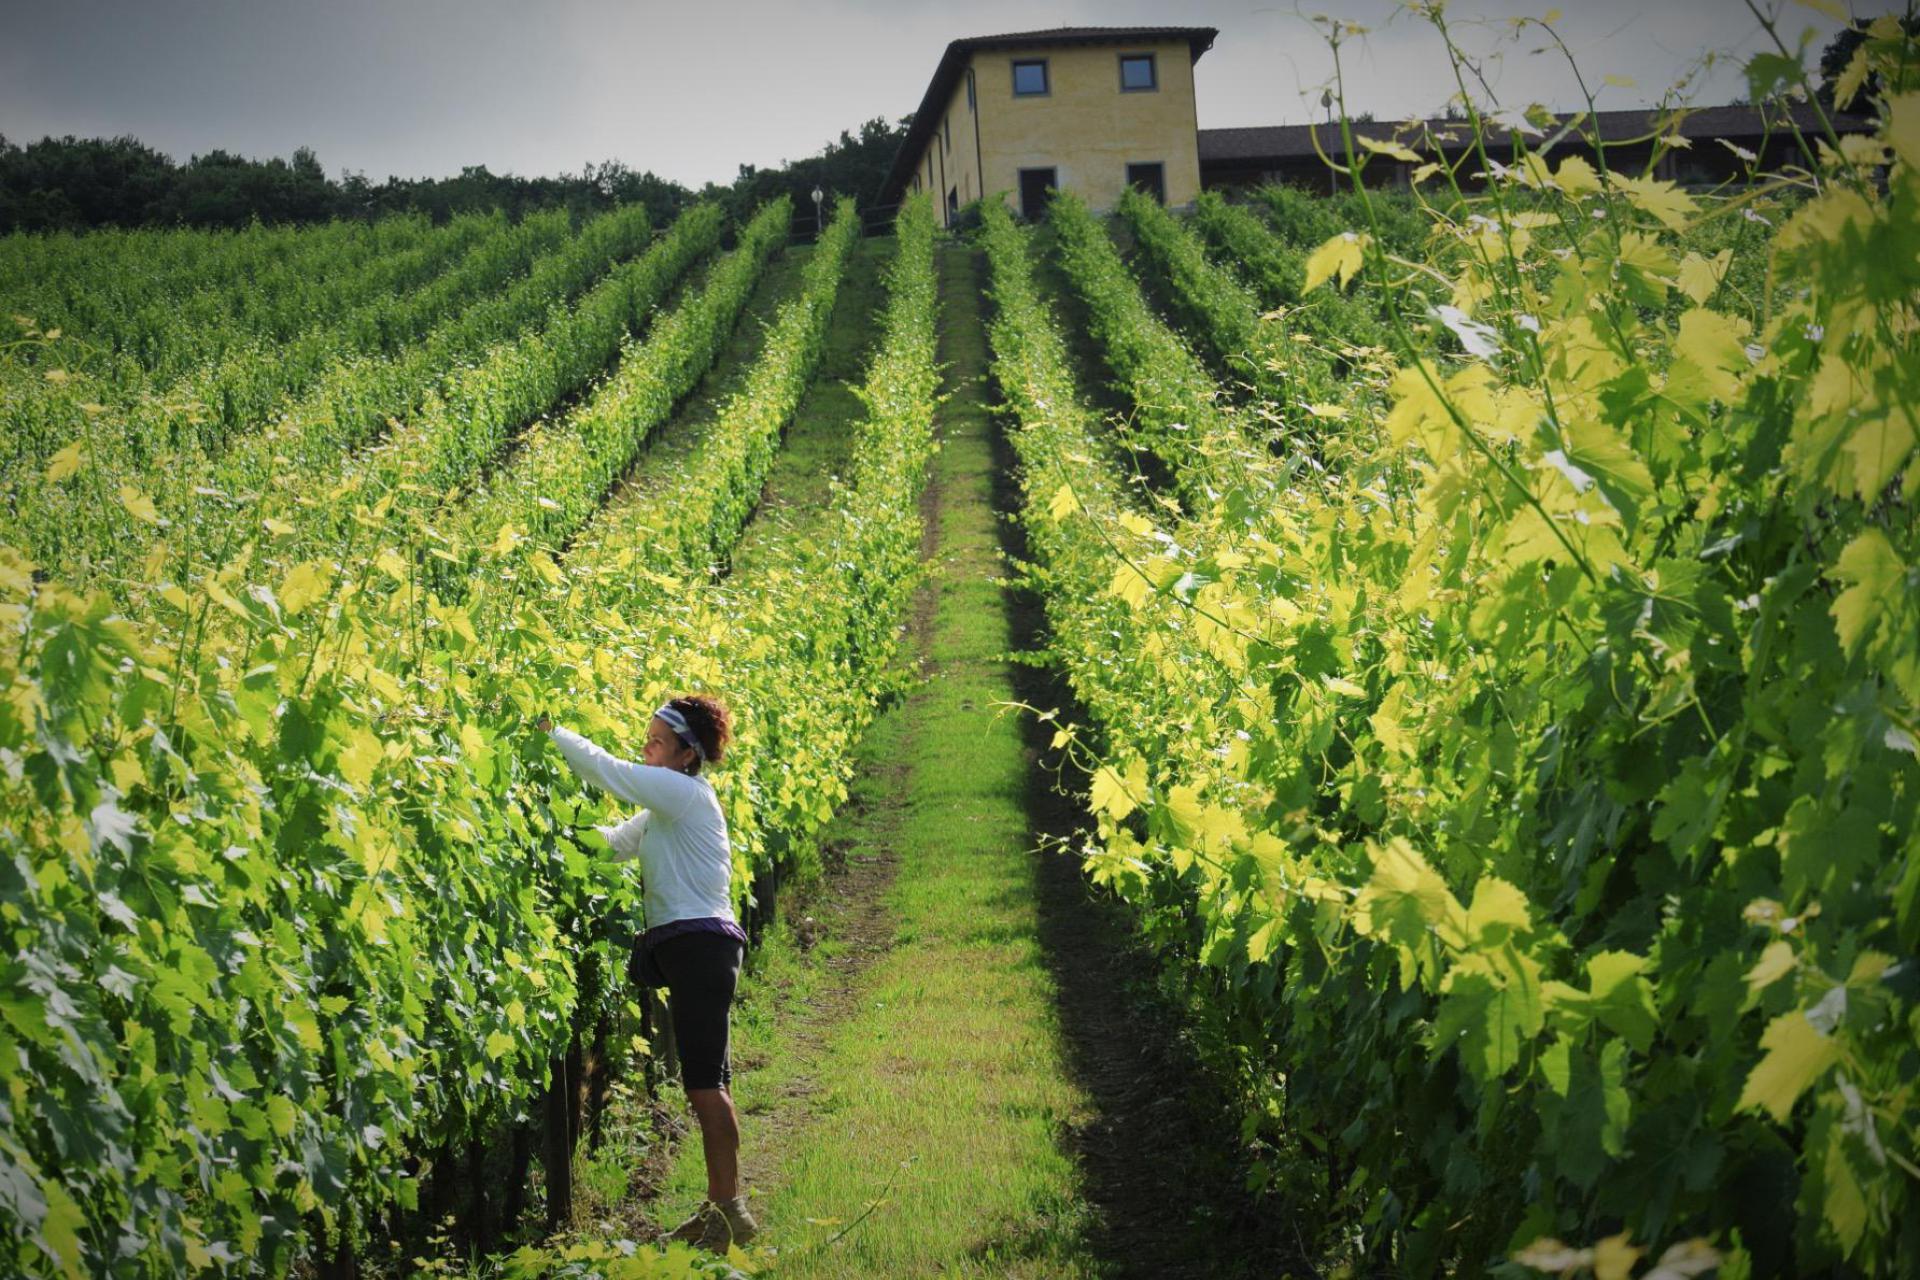 Agriturismo between vineyards south of Siena